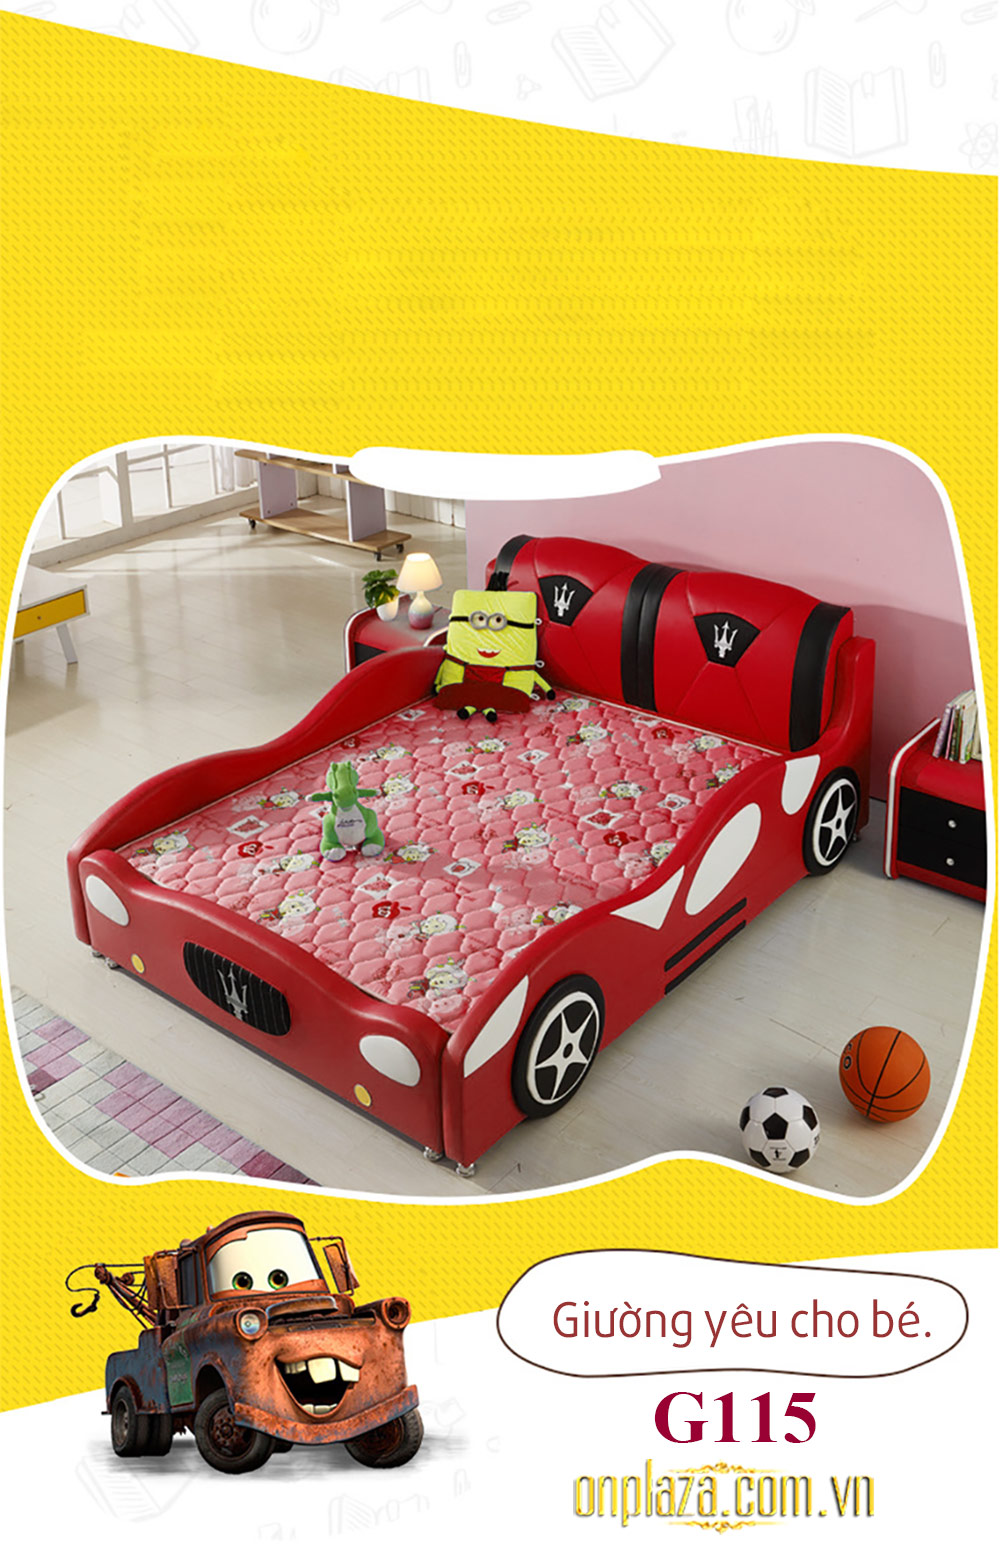 Giường ngủ bọc da dáng xe thể thao cho bé G115